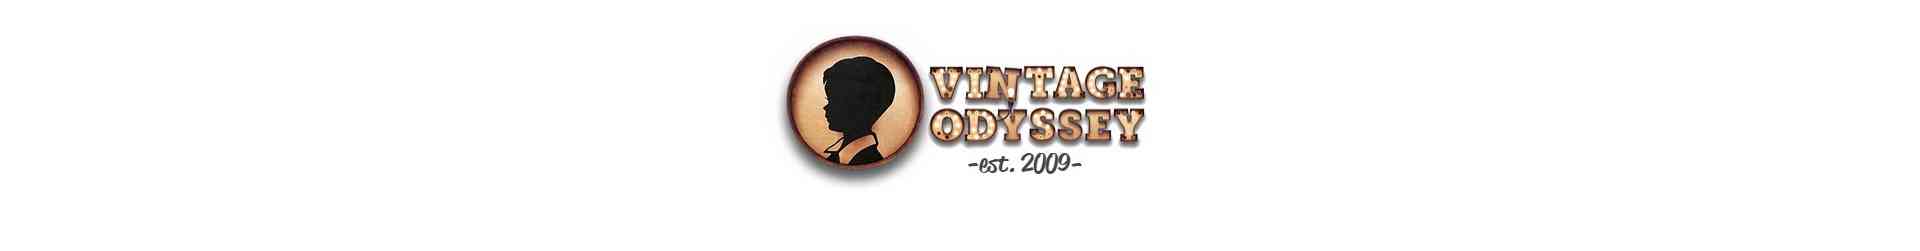 Vintage Odissey